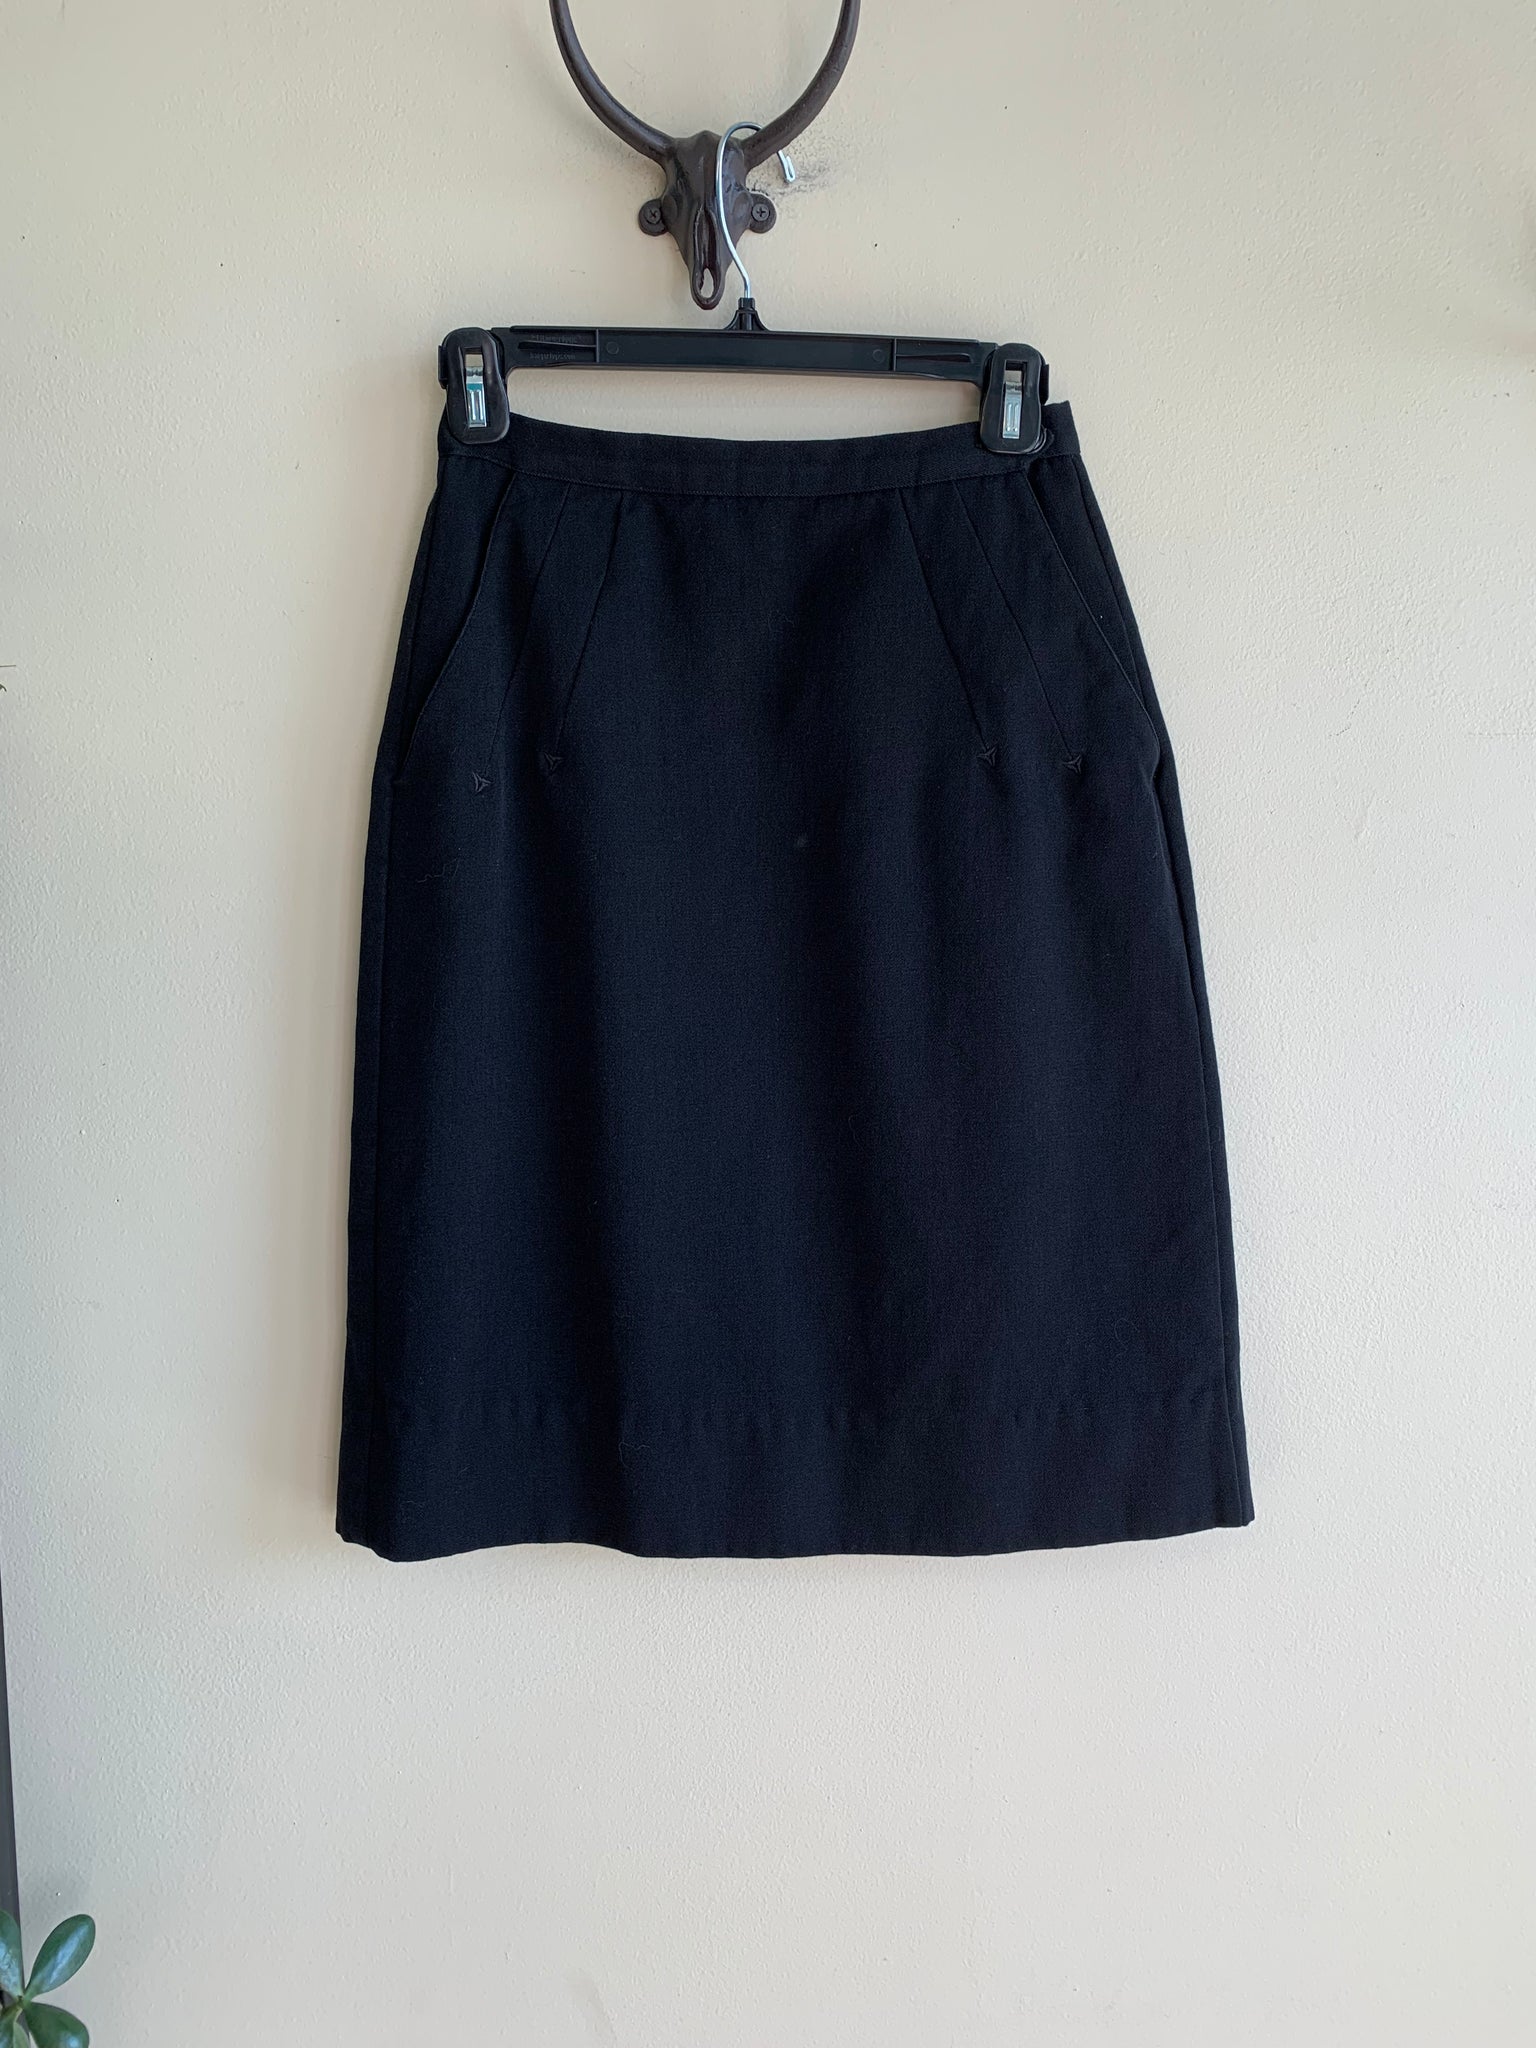 '70s Gor-Ray Black Wool Skirt - S